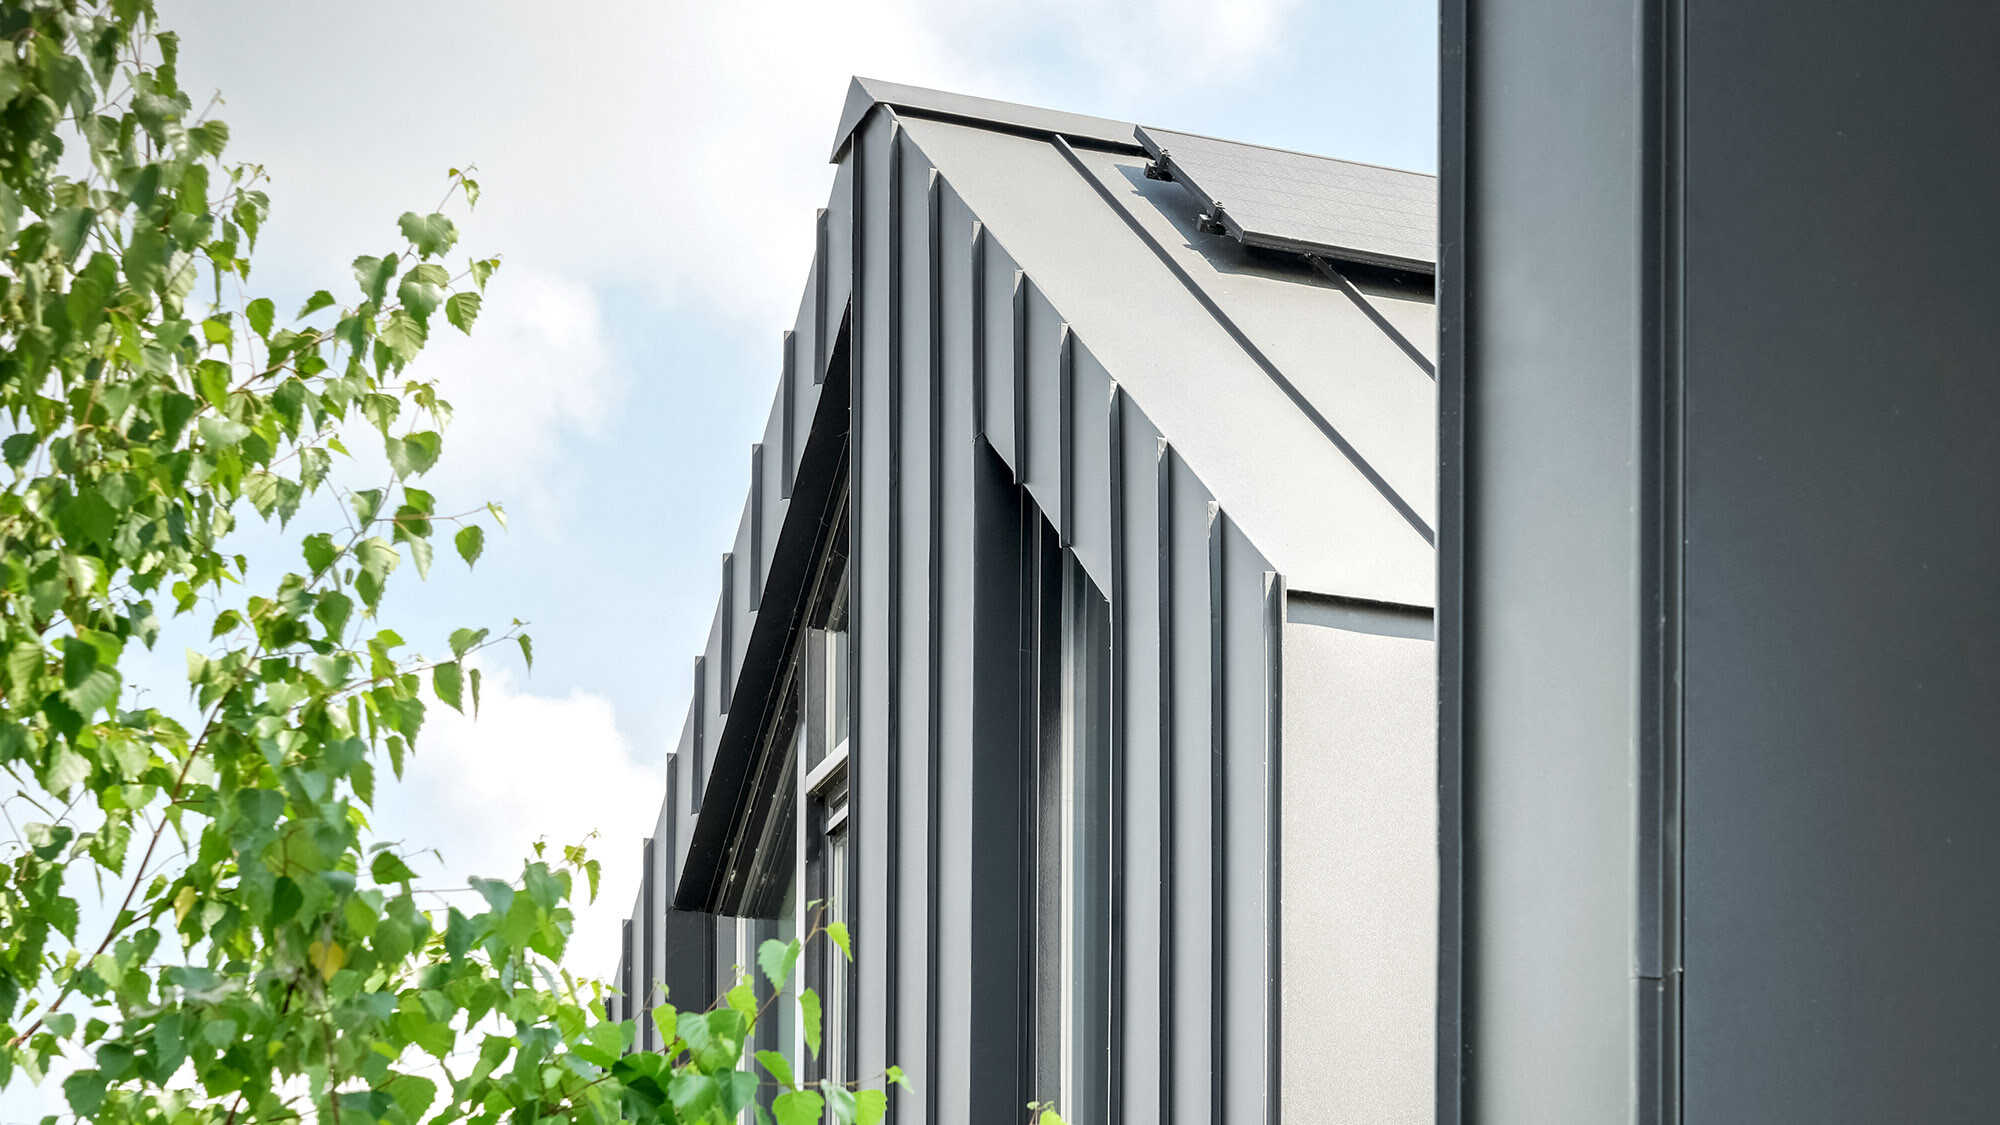 Seitenansicht eines modernen Hauses mit einem steilen Satteldach, gedeckt mit schwarzen Prefalz-Dachbahnen, und ausgestattet mit Solarmodulen. Die vertikalen Fassadenelemente und die dunkle Dachfarbe kontrastieren mit der lebendigen grünen Umgebung aus nahen Baumzweigen, die in das Bild hineinragen.